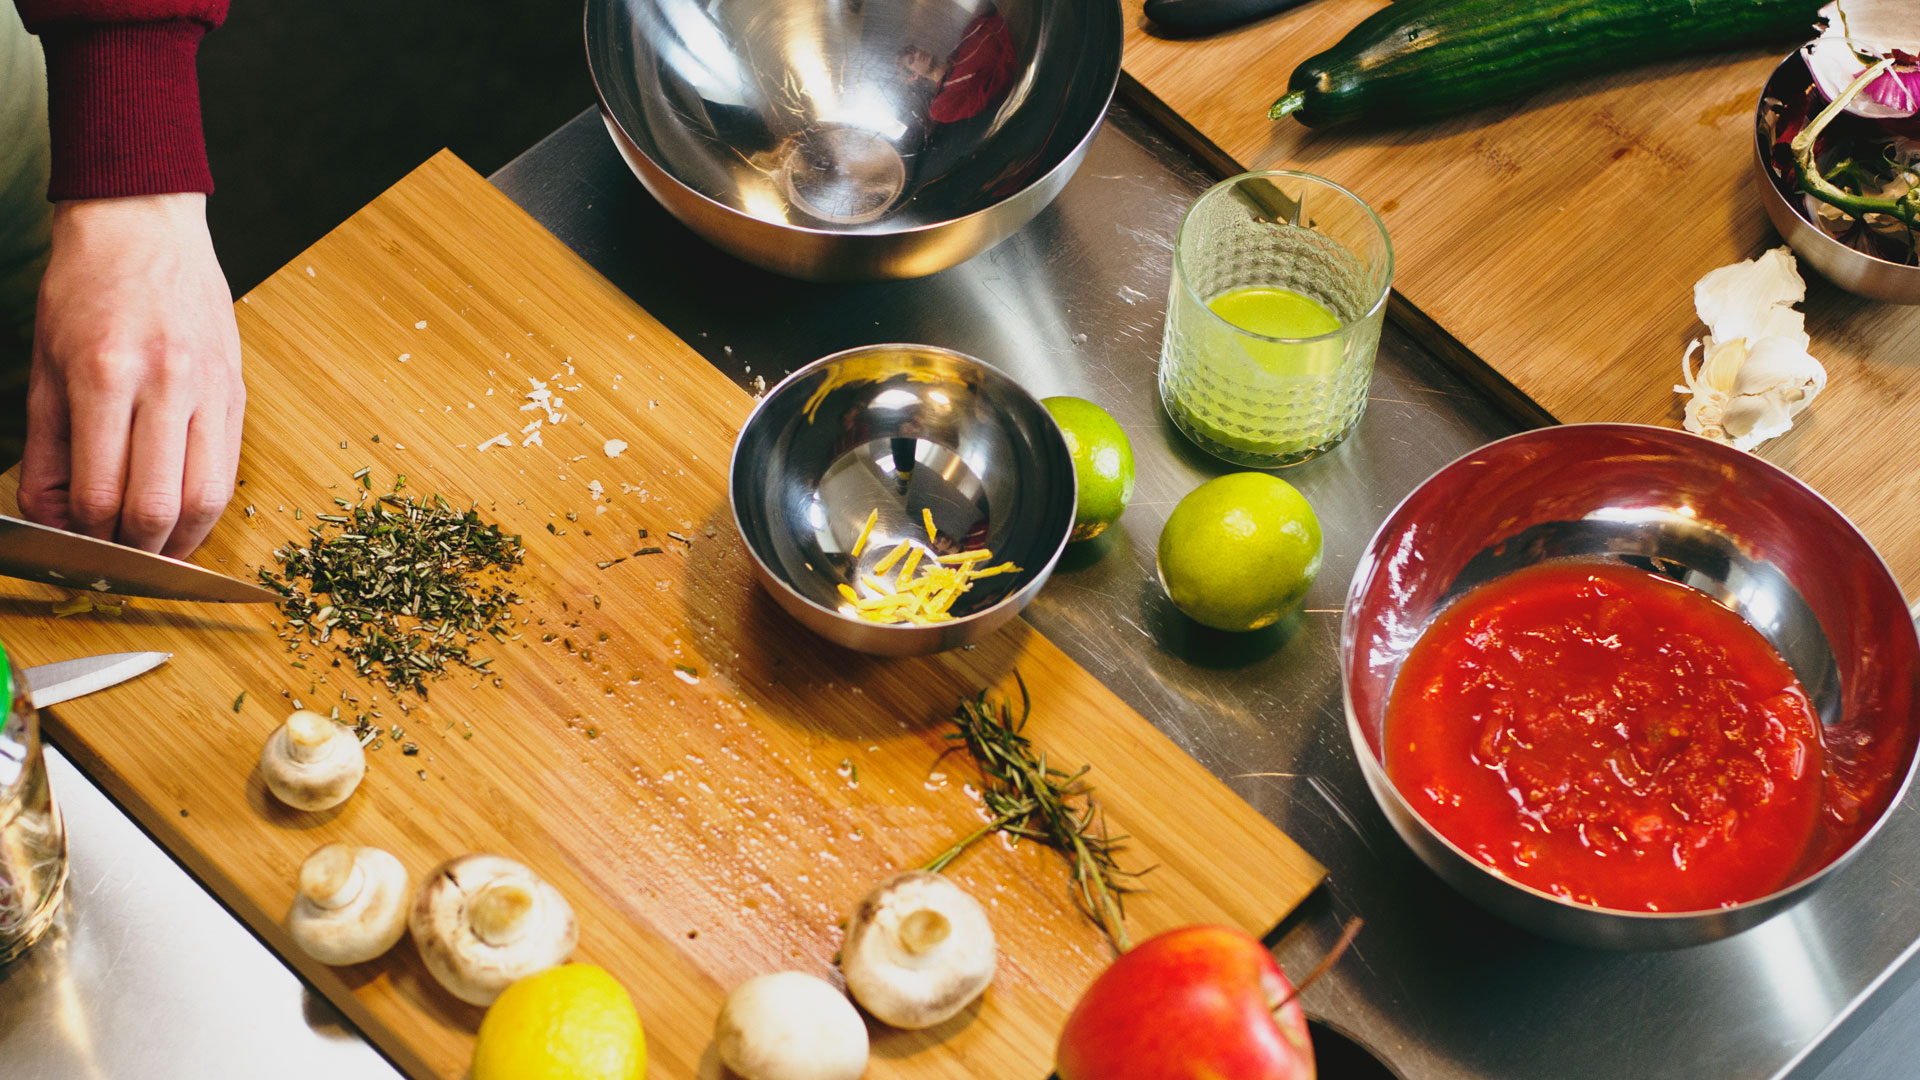 Preparing-ingredients-for-vegan-gluten-free-lentil-lemon-rosemary-rocket-salad-and-gazpacho-soup-Foodadit